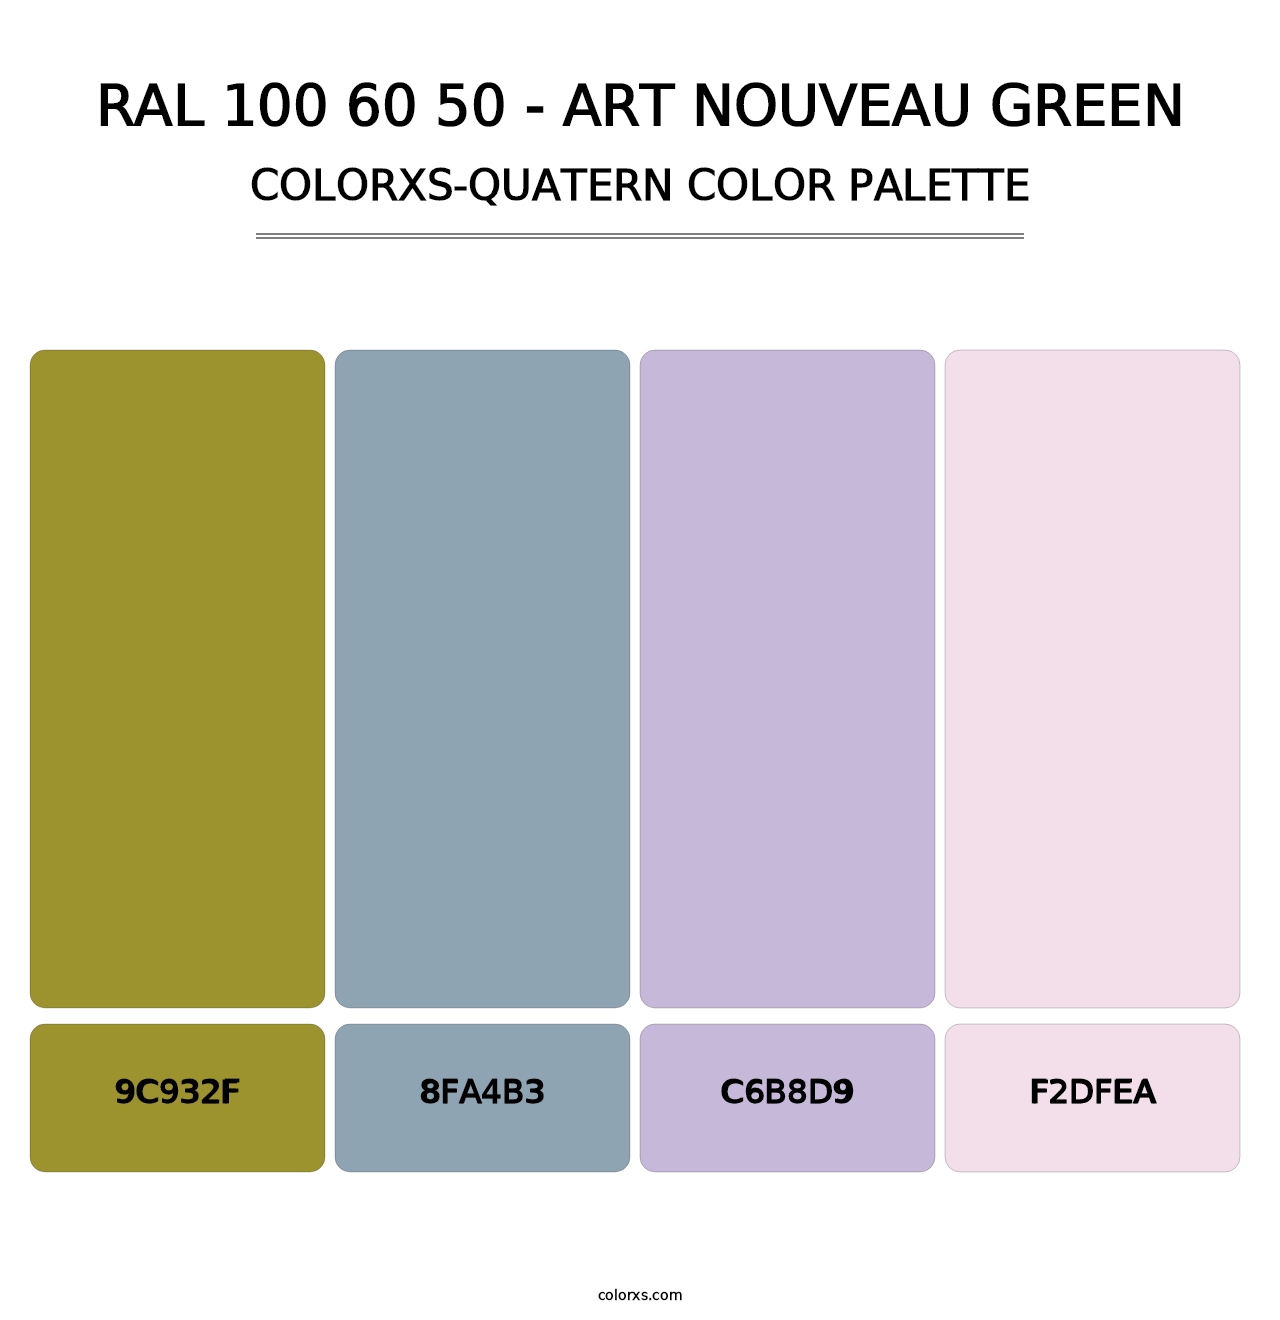 RAL 100 60 50 - Art Nouveau Green - Colorxs Quatern Palette